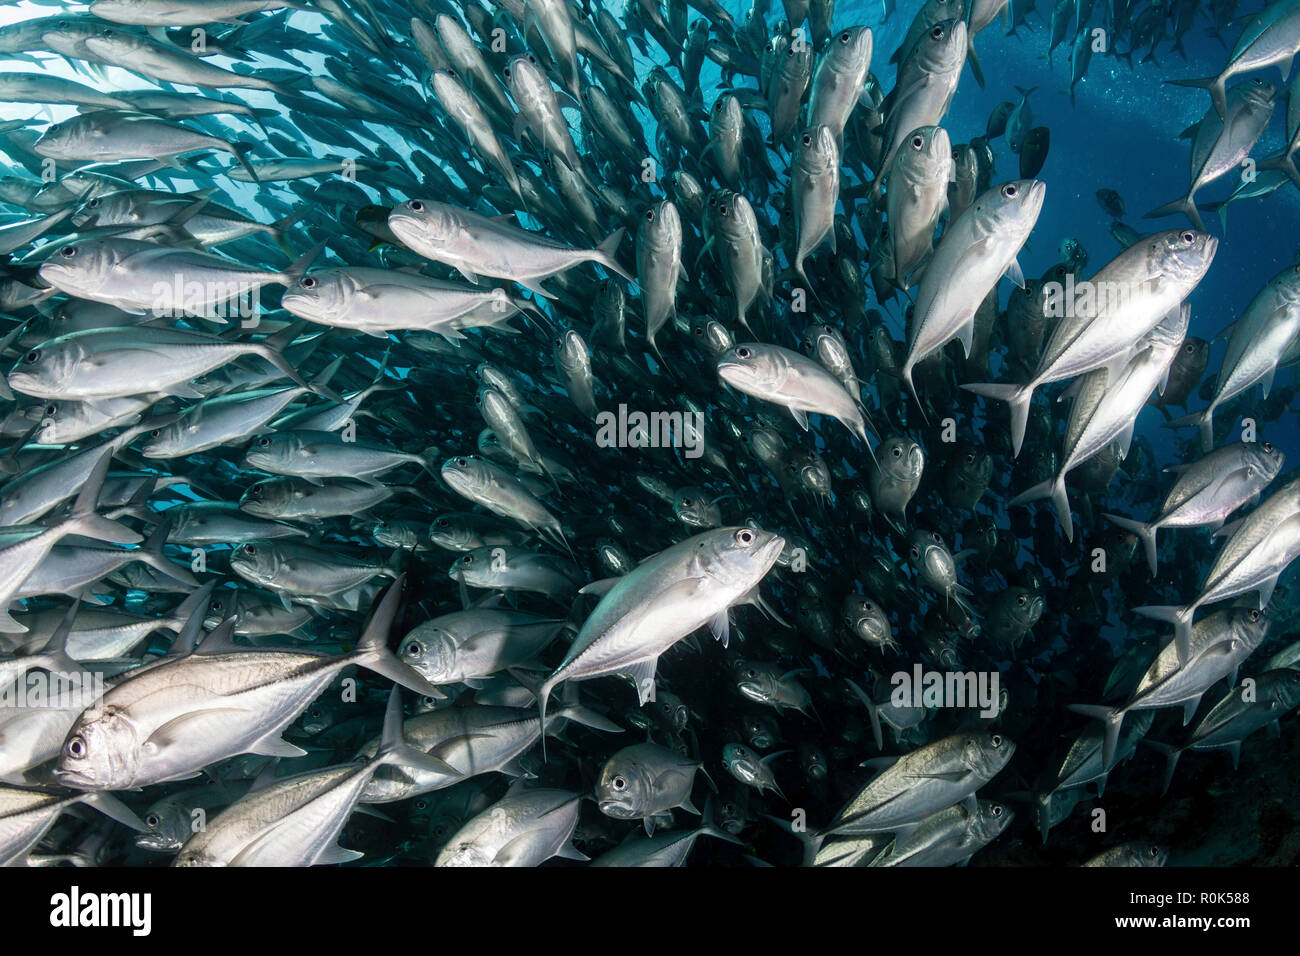 Schooling jack fish in the waters of Sipadan, Malaysia. Stock Photo